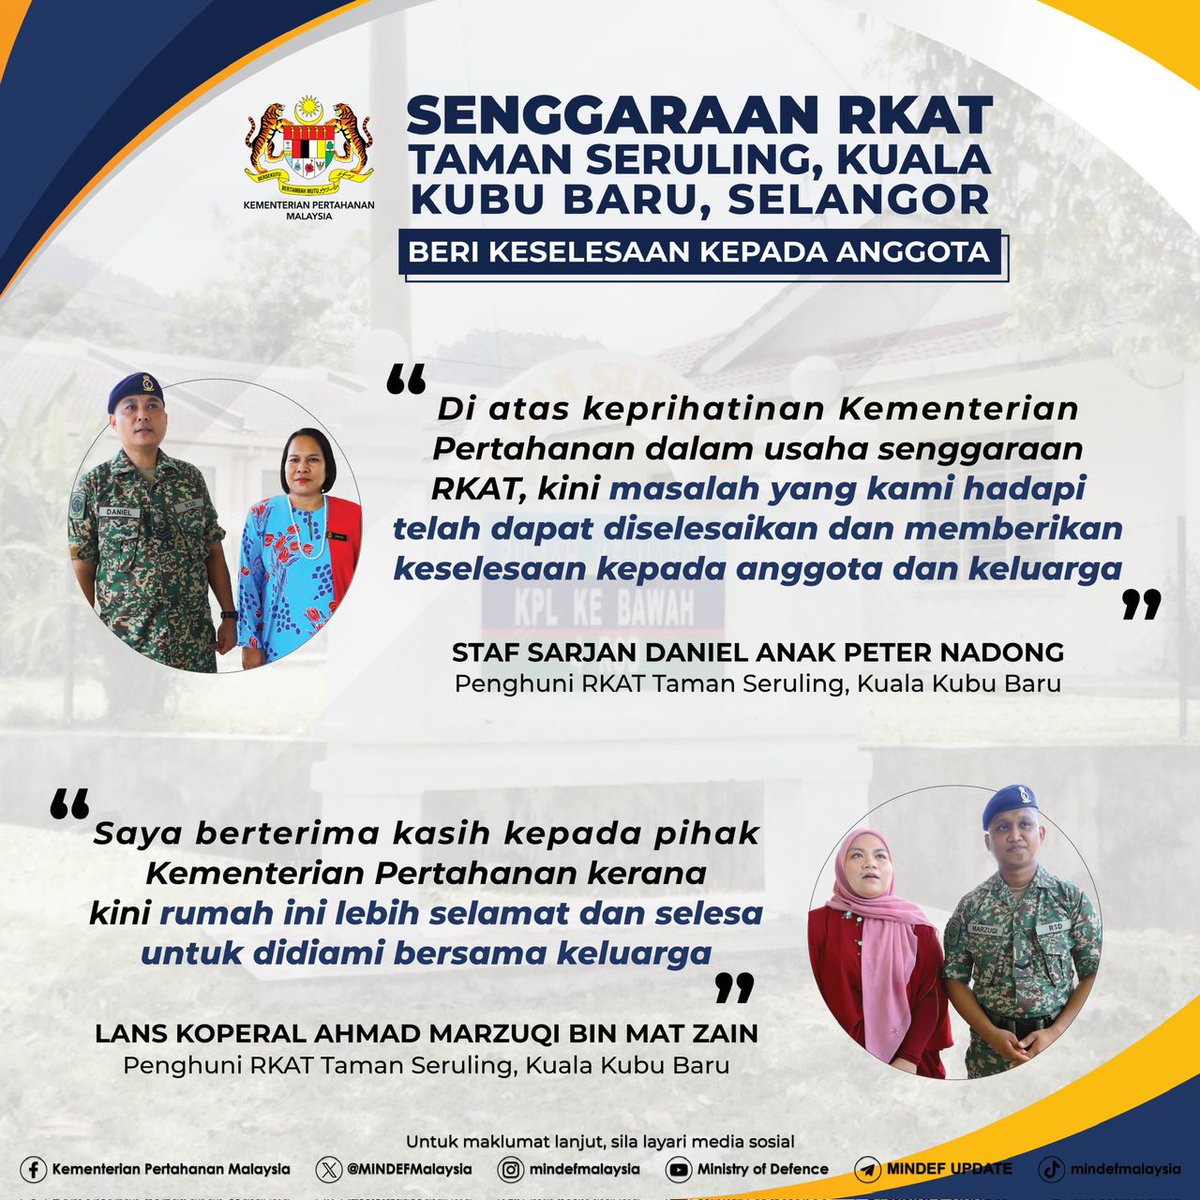 Penyelenggaraan RKAT sentiasa menjadi fokus utama Kementerian Pertahanan dalam menjaga kesejahteraan warga Angkatan Tentera Malaysia. Baik pulih masalah kerosakan mampu memberi keselesaan kepada anggota termasuk keluarga.

#MindefMalaysia
#MindefUpdate
#KebajikanAnggotaATM
#RKAT